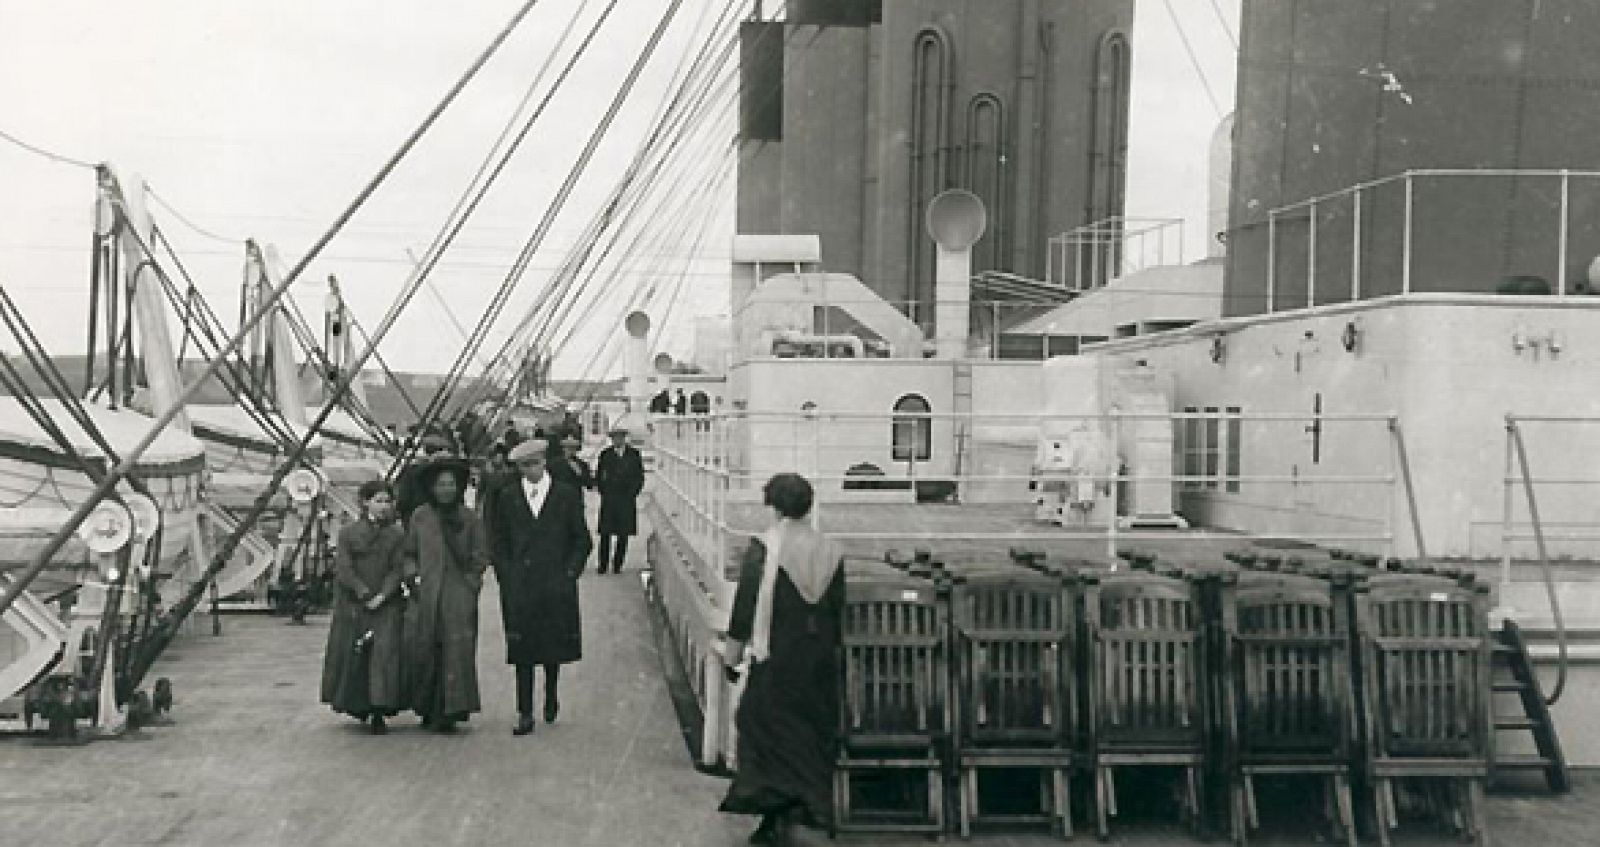 Imagen de la cubierta de segunda clase del Titanic con los botes salvavidas a la izquierda.